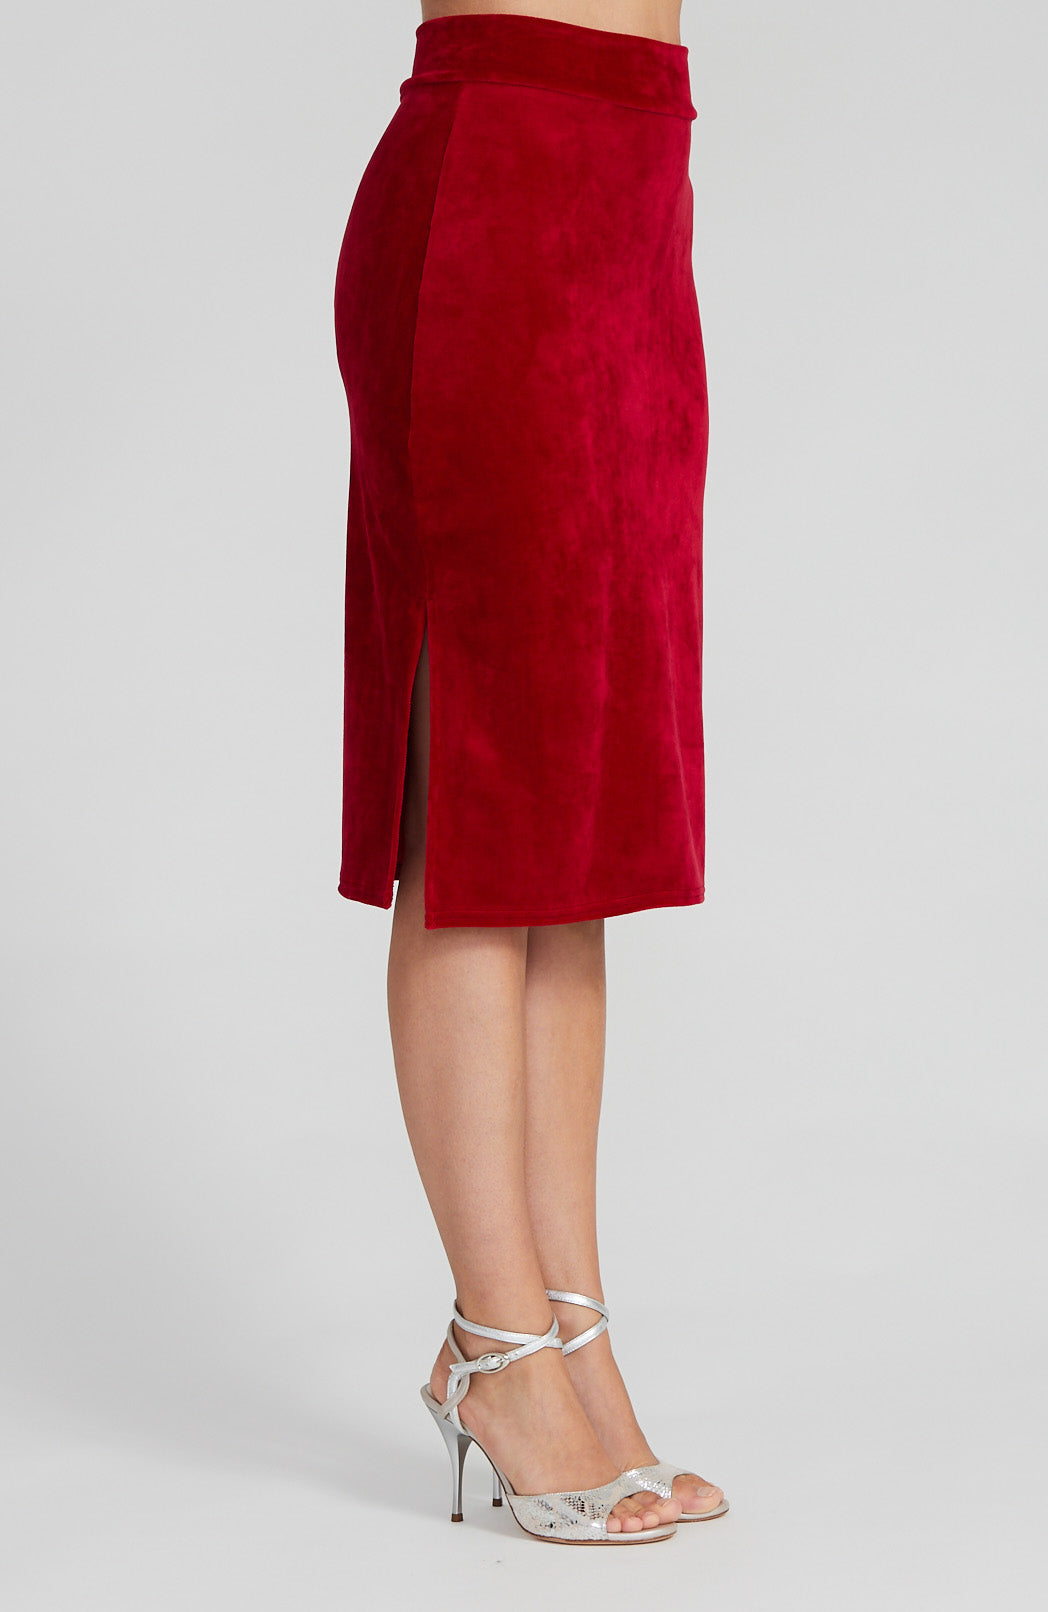 MIA - Red Velvet Tango Skirt with Side Slits